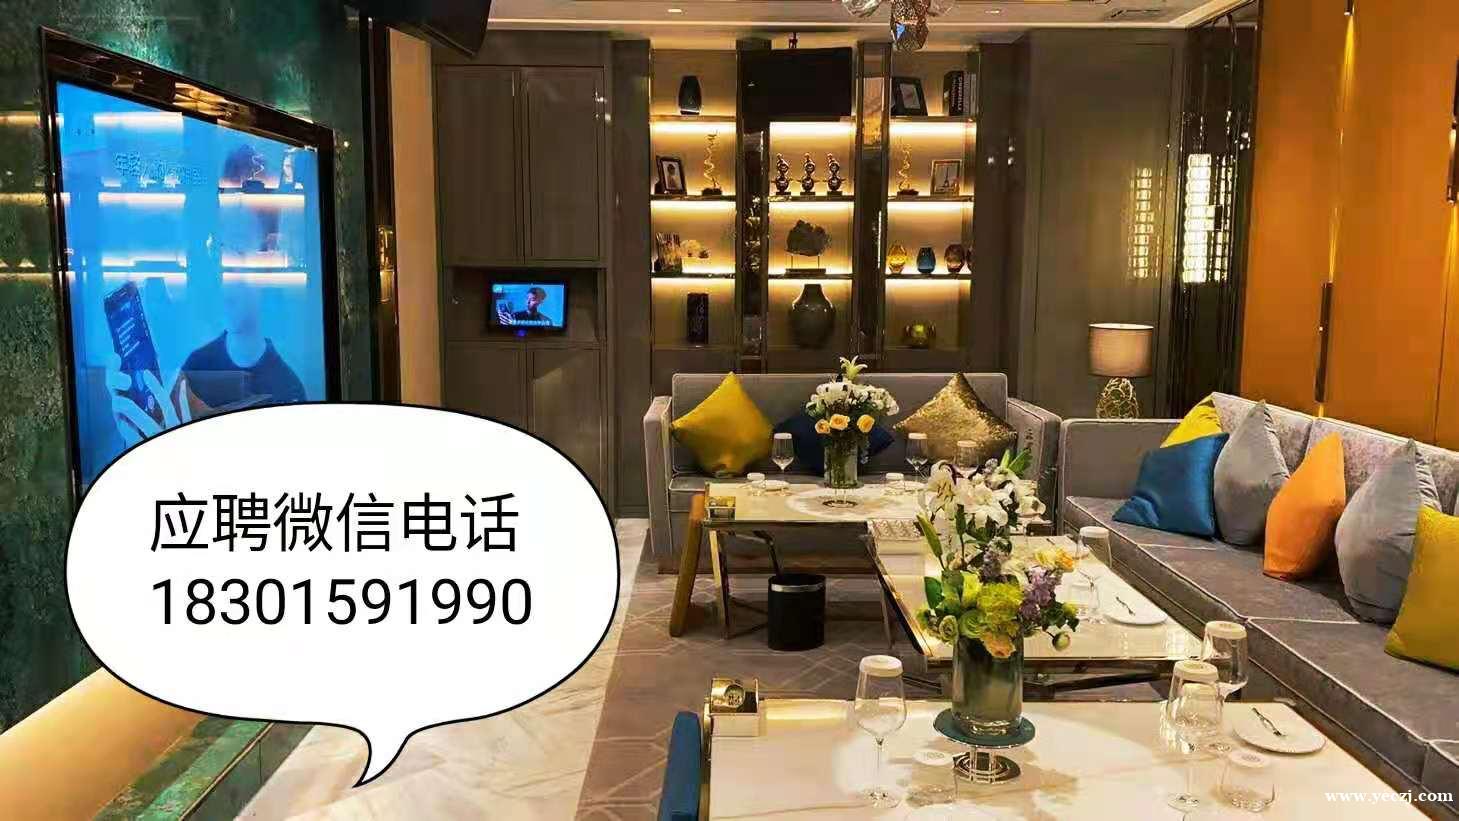 上海顶级夜场ktv招聘那还好模特-日结高薪2000起步 翻台多多